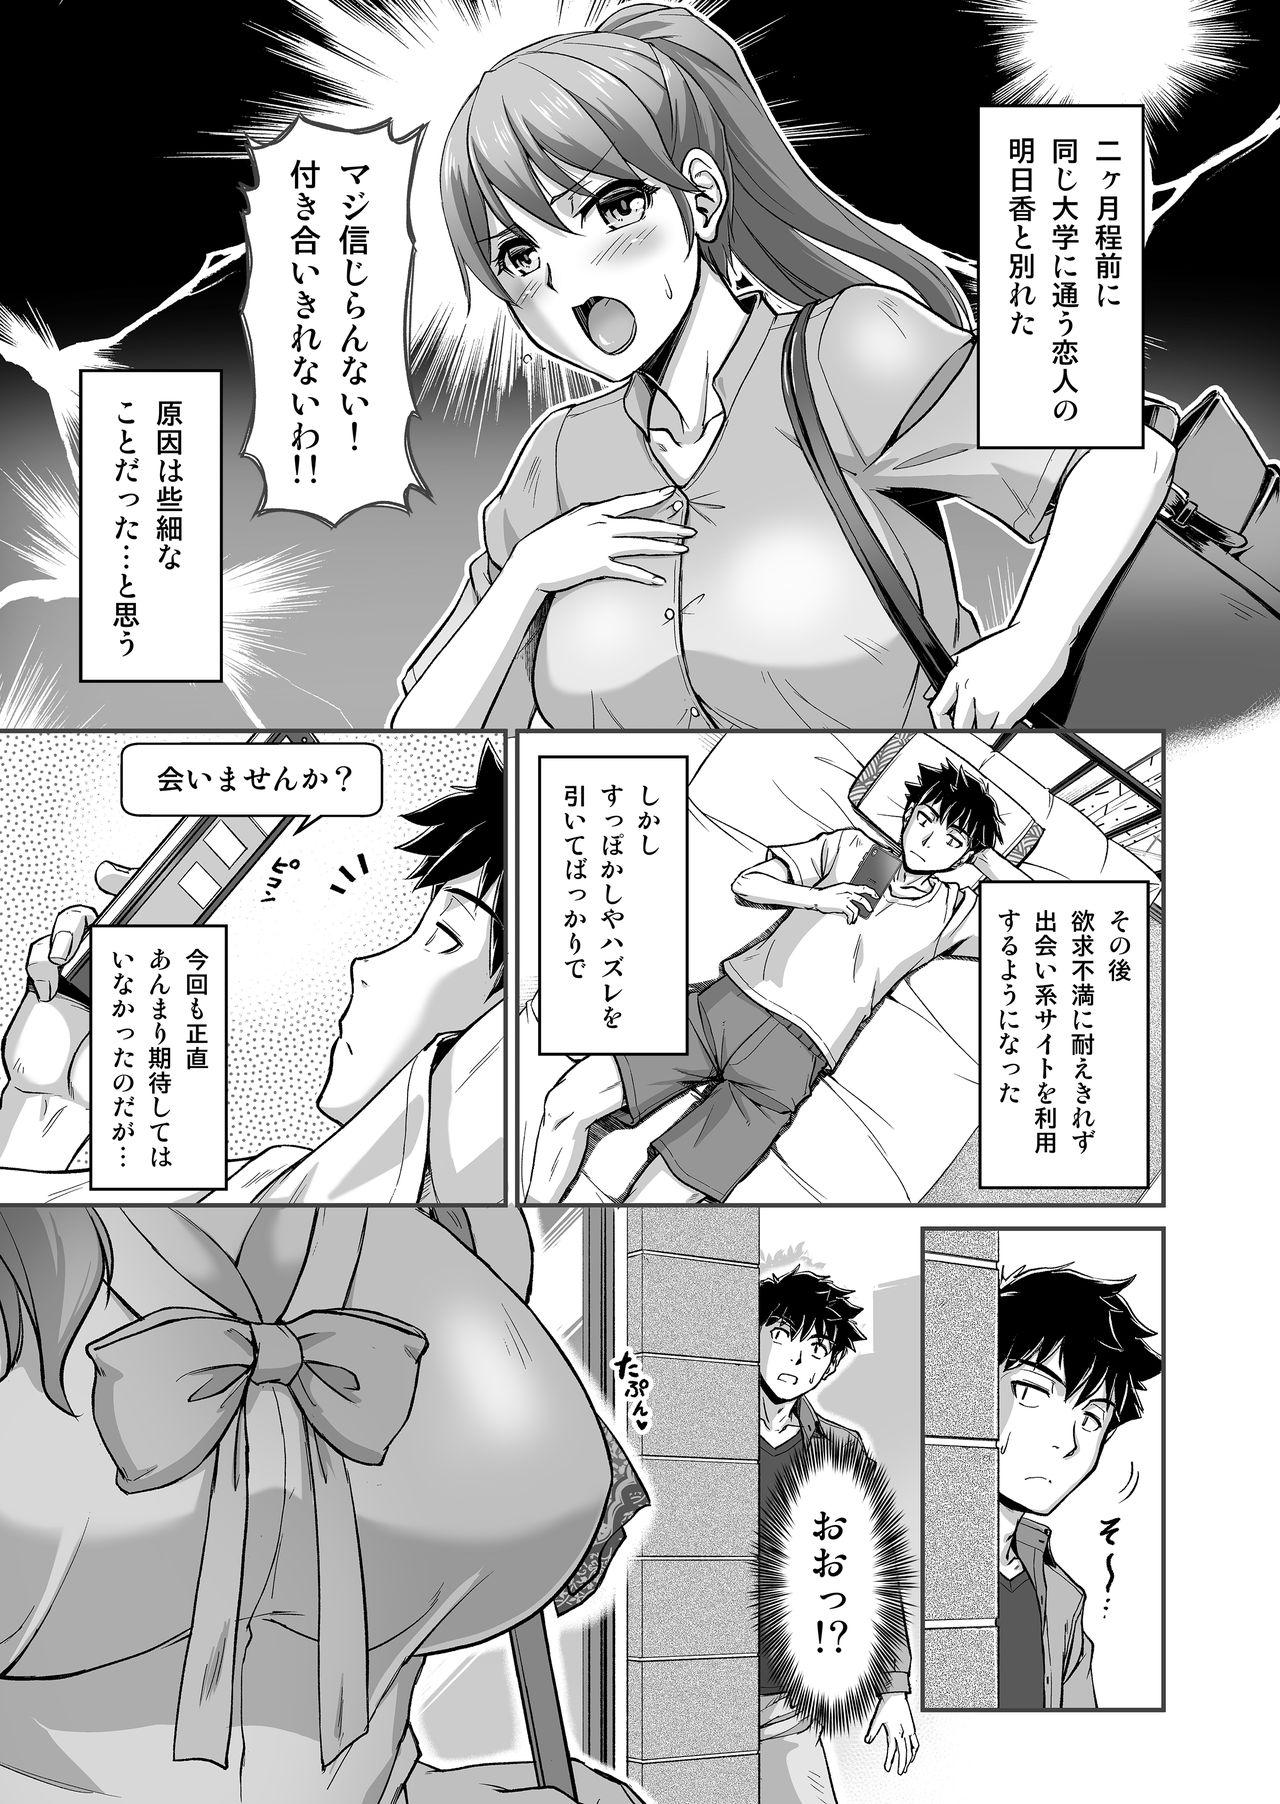 Str8 Deaikei de Nanpa Shitara Motokano no Gibo ga Kita - Original Family Porn - Page 2